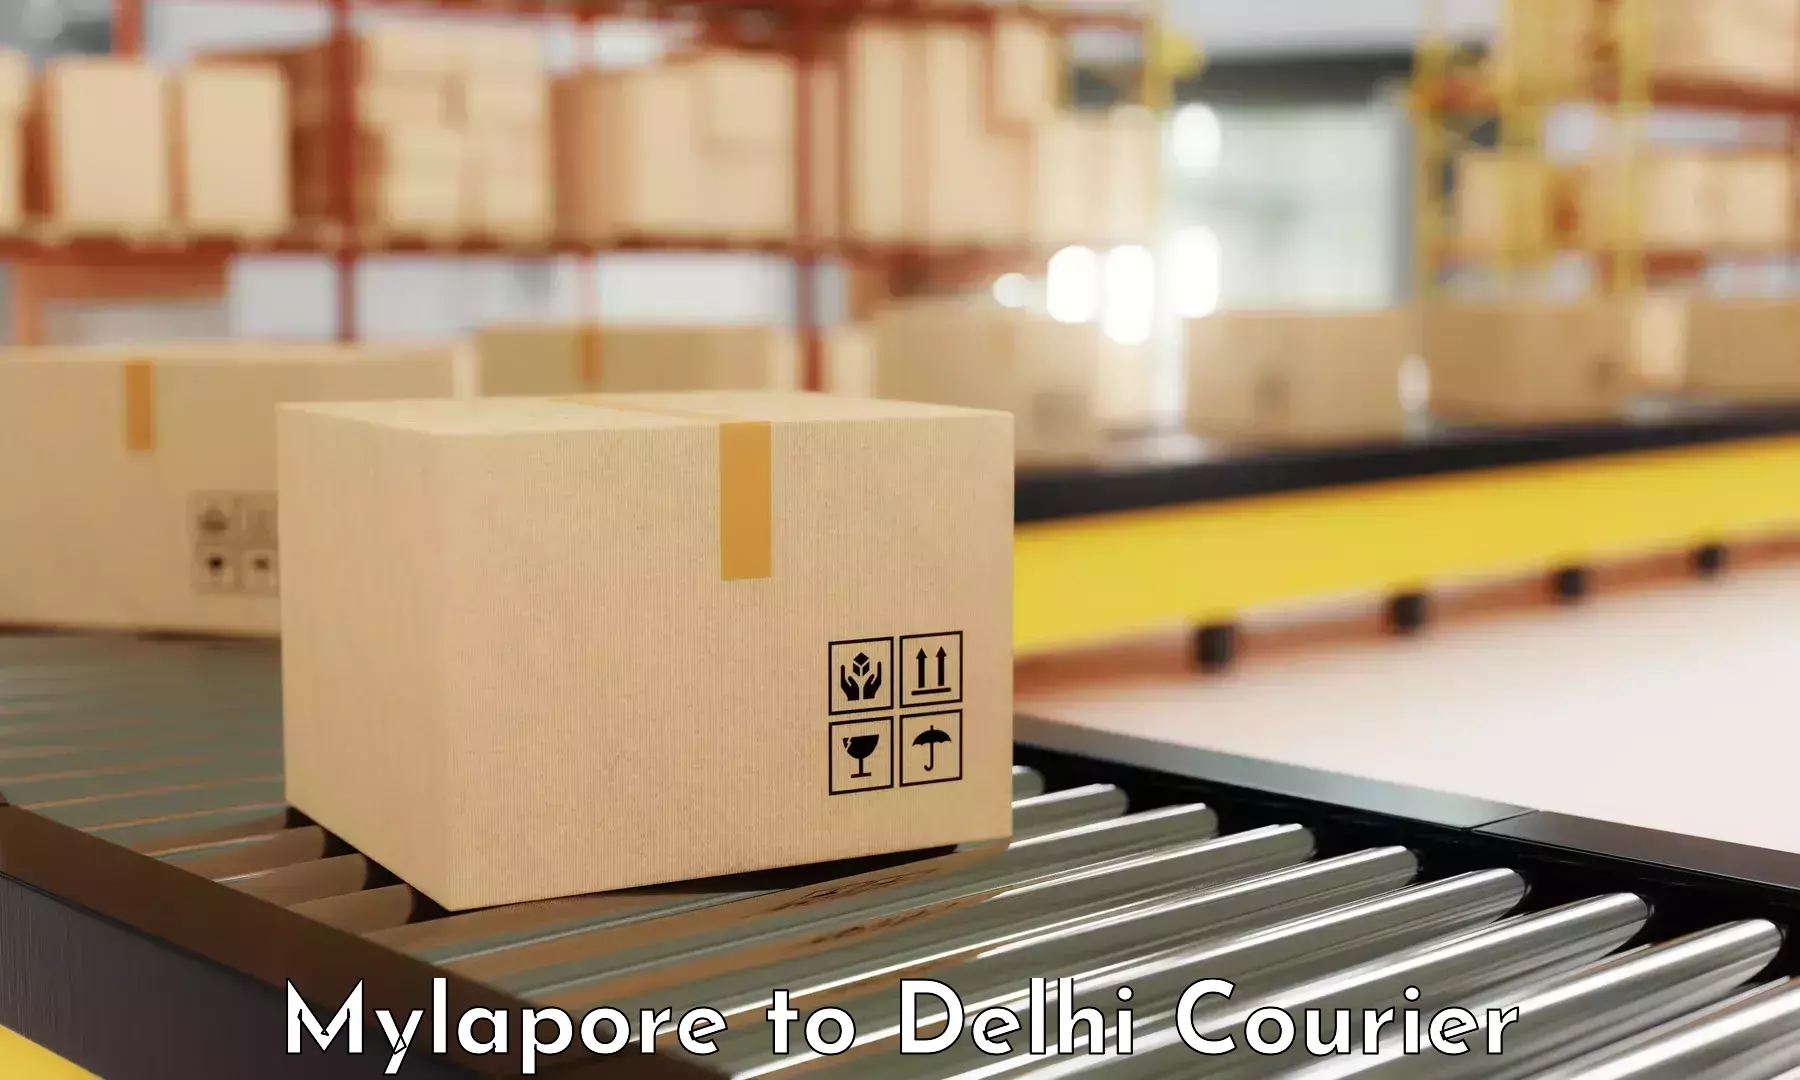 Speedy delivery service Mylapore to Delhi